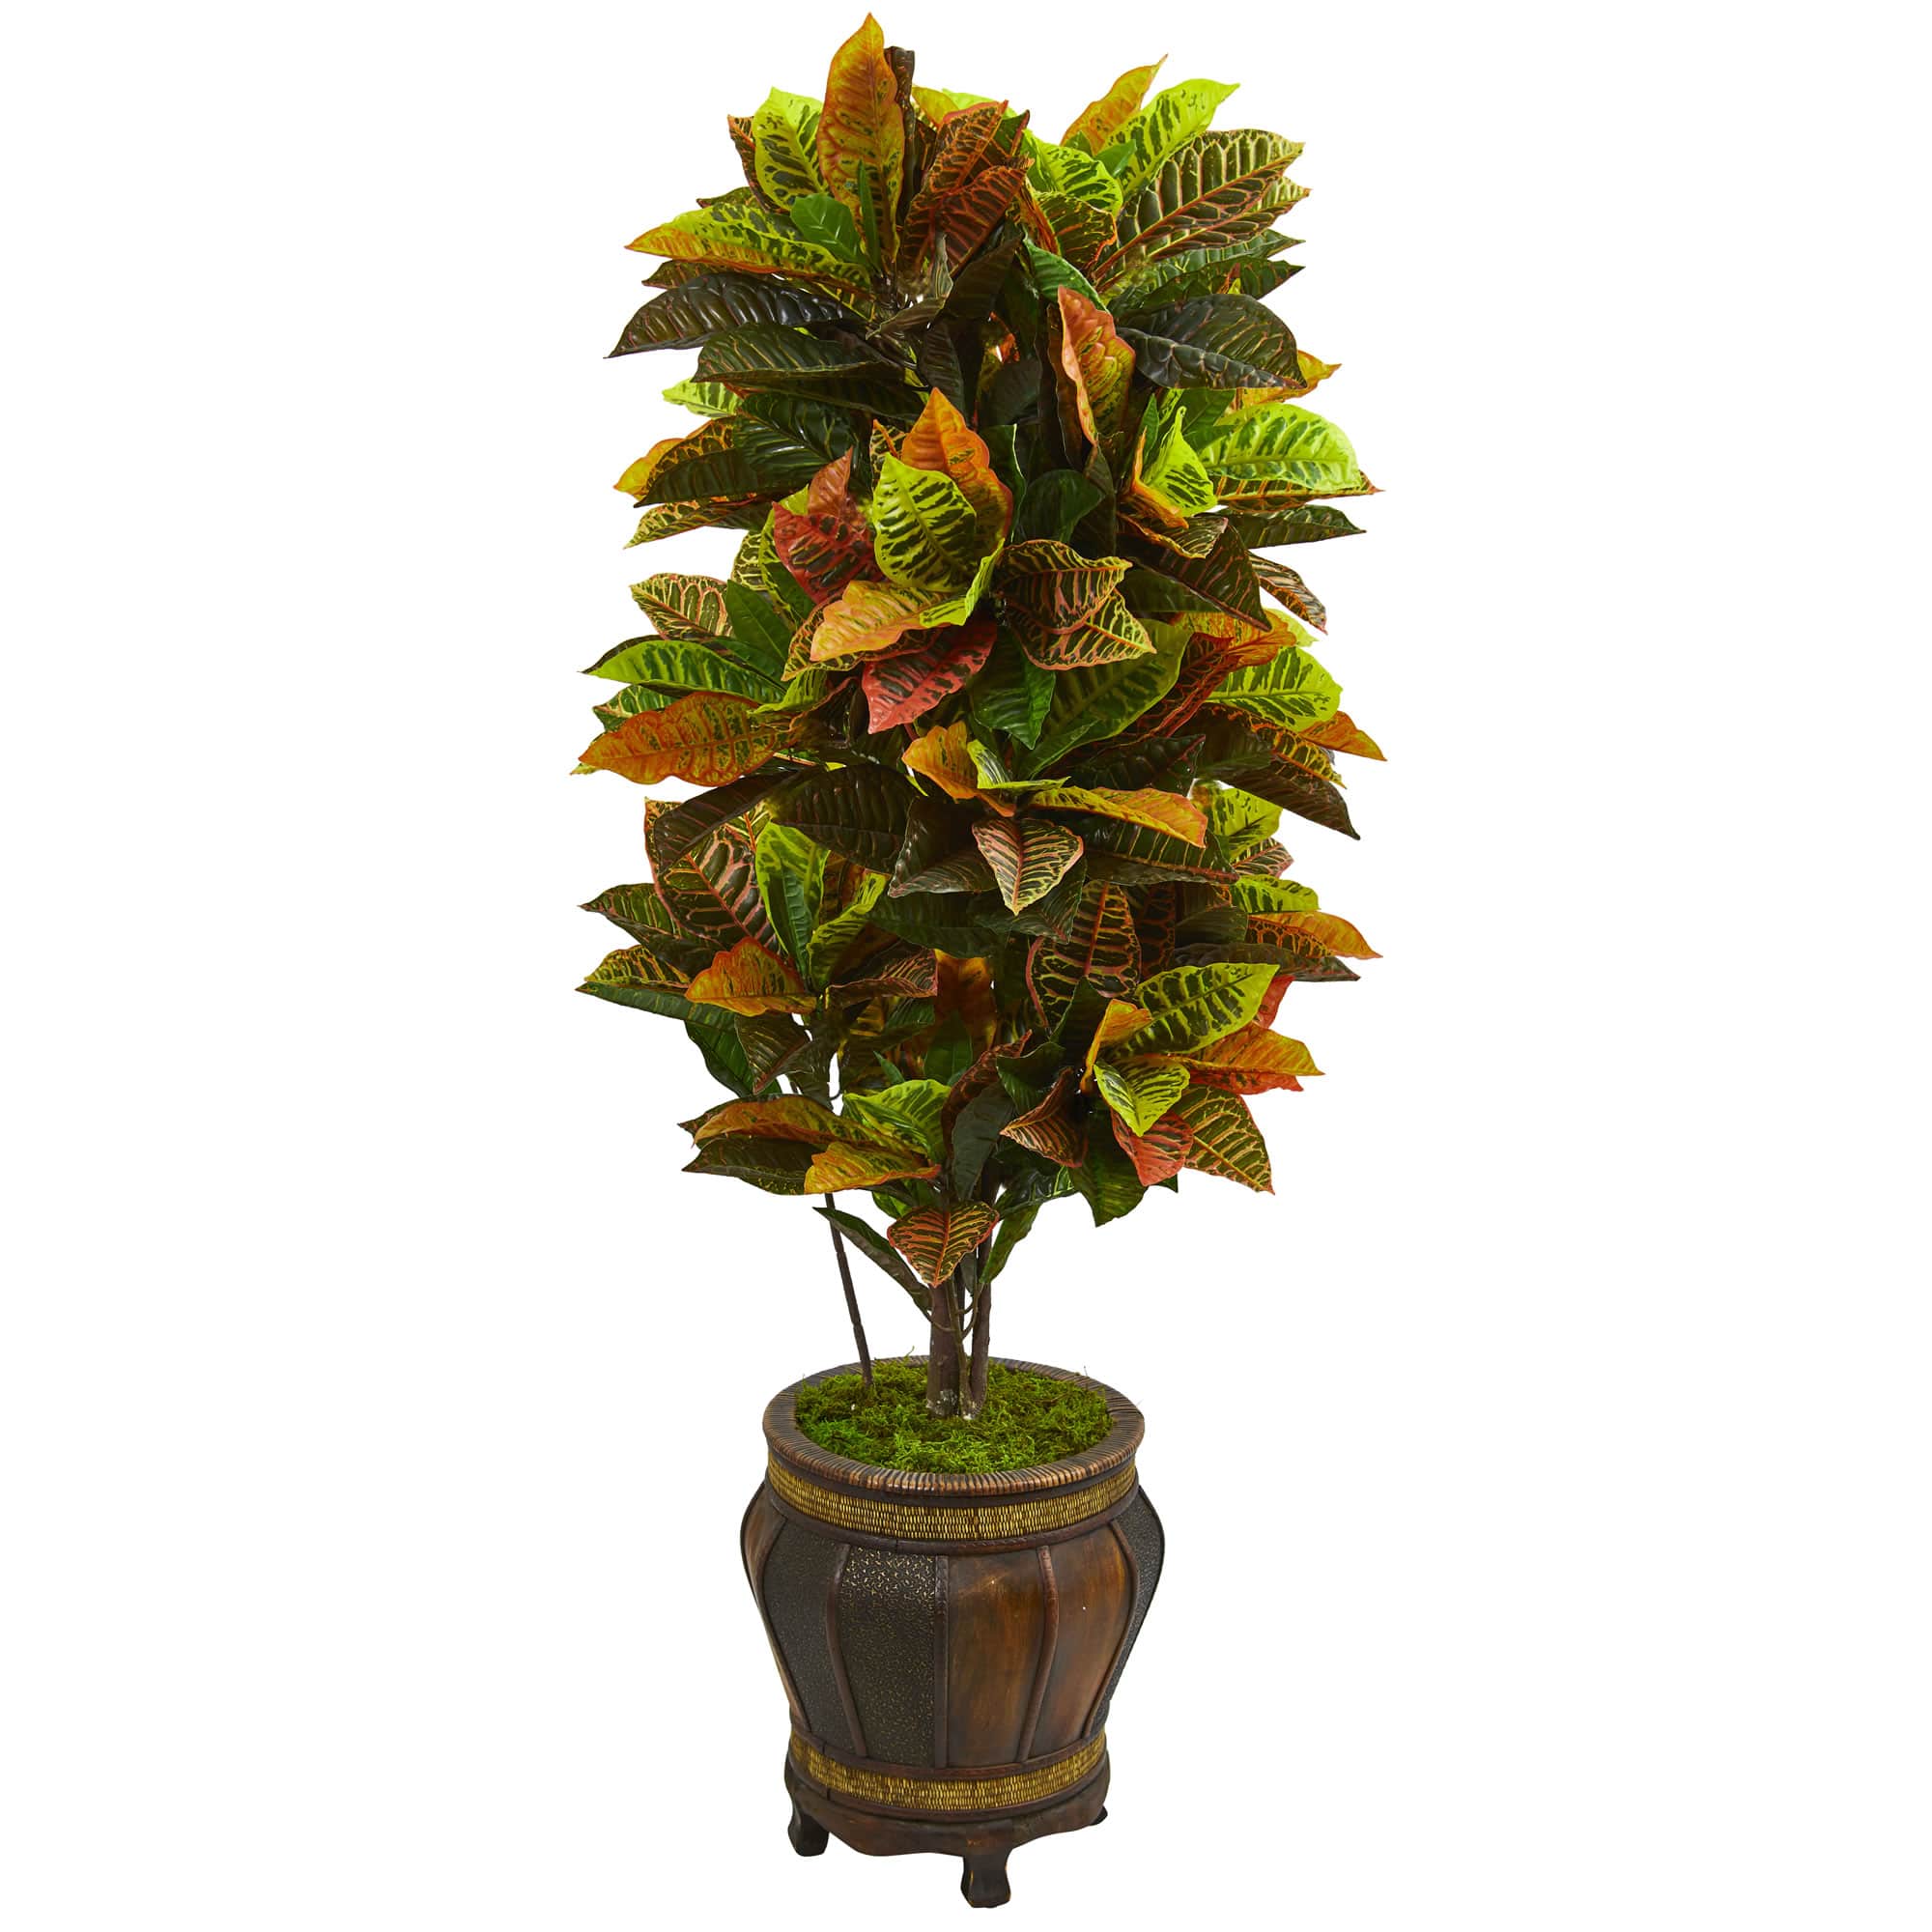 5.5ft. Croton Plant in Decorative Planter